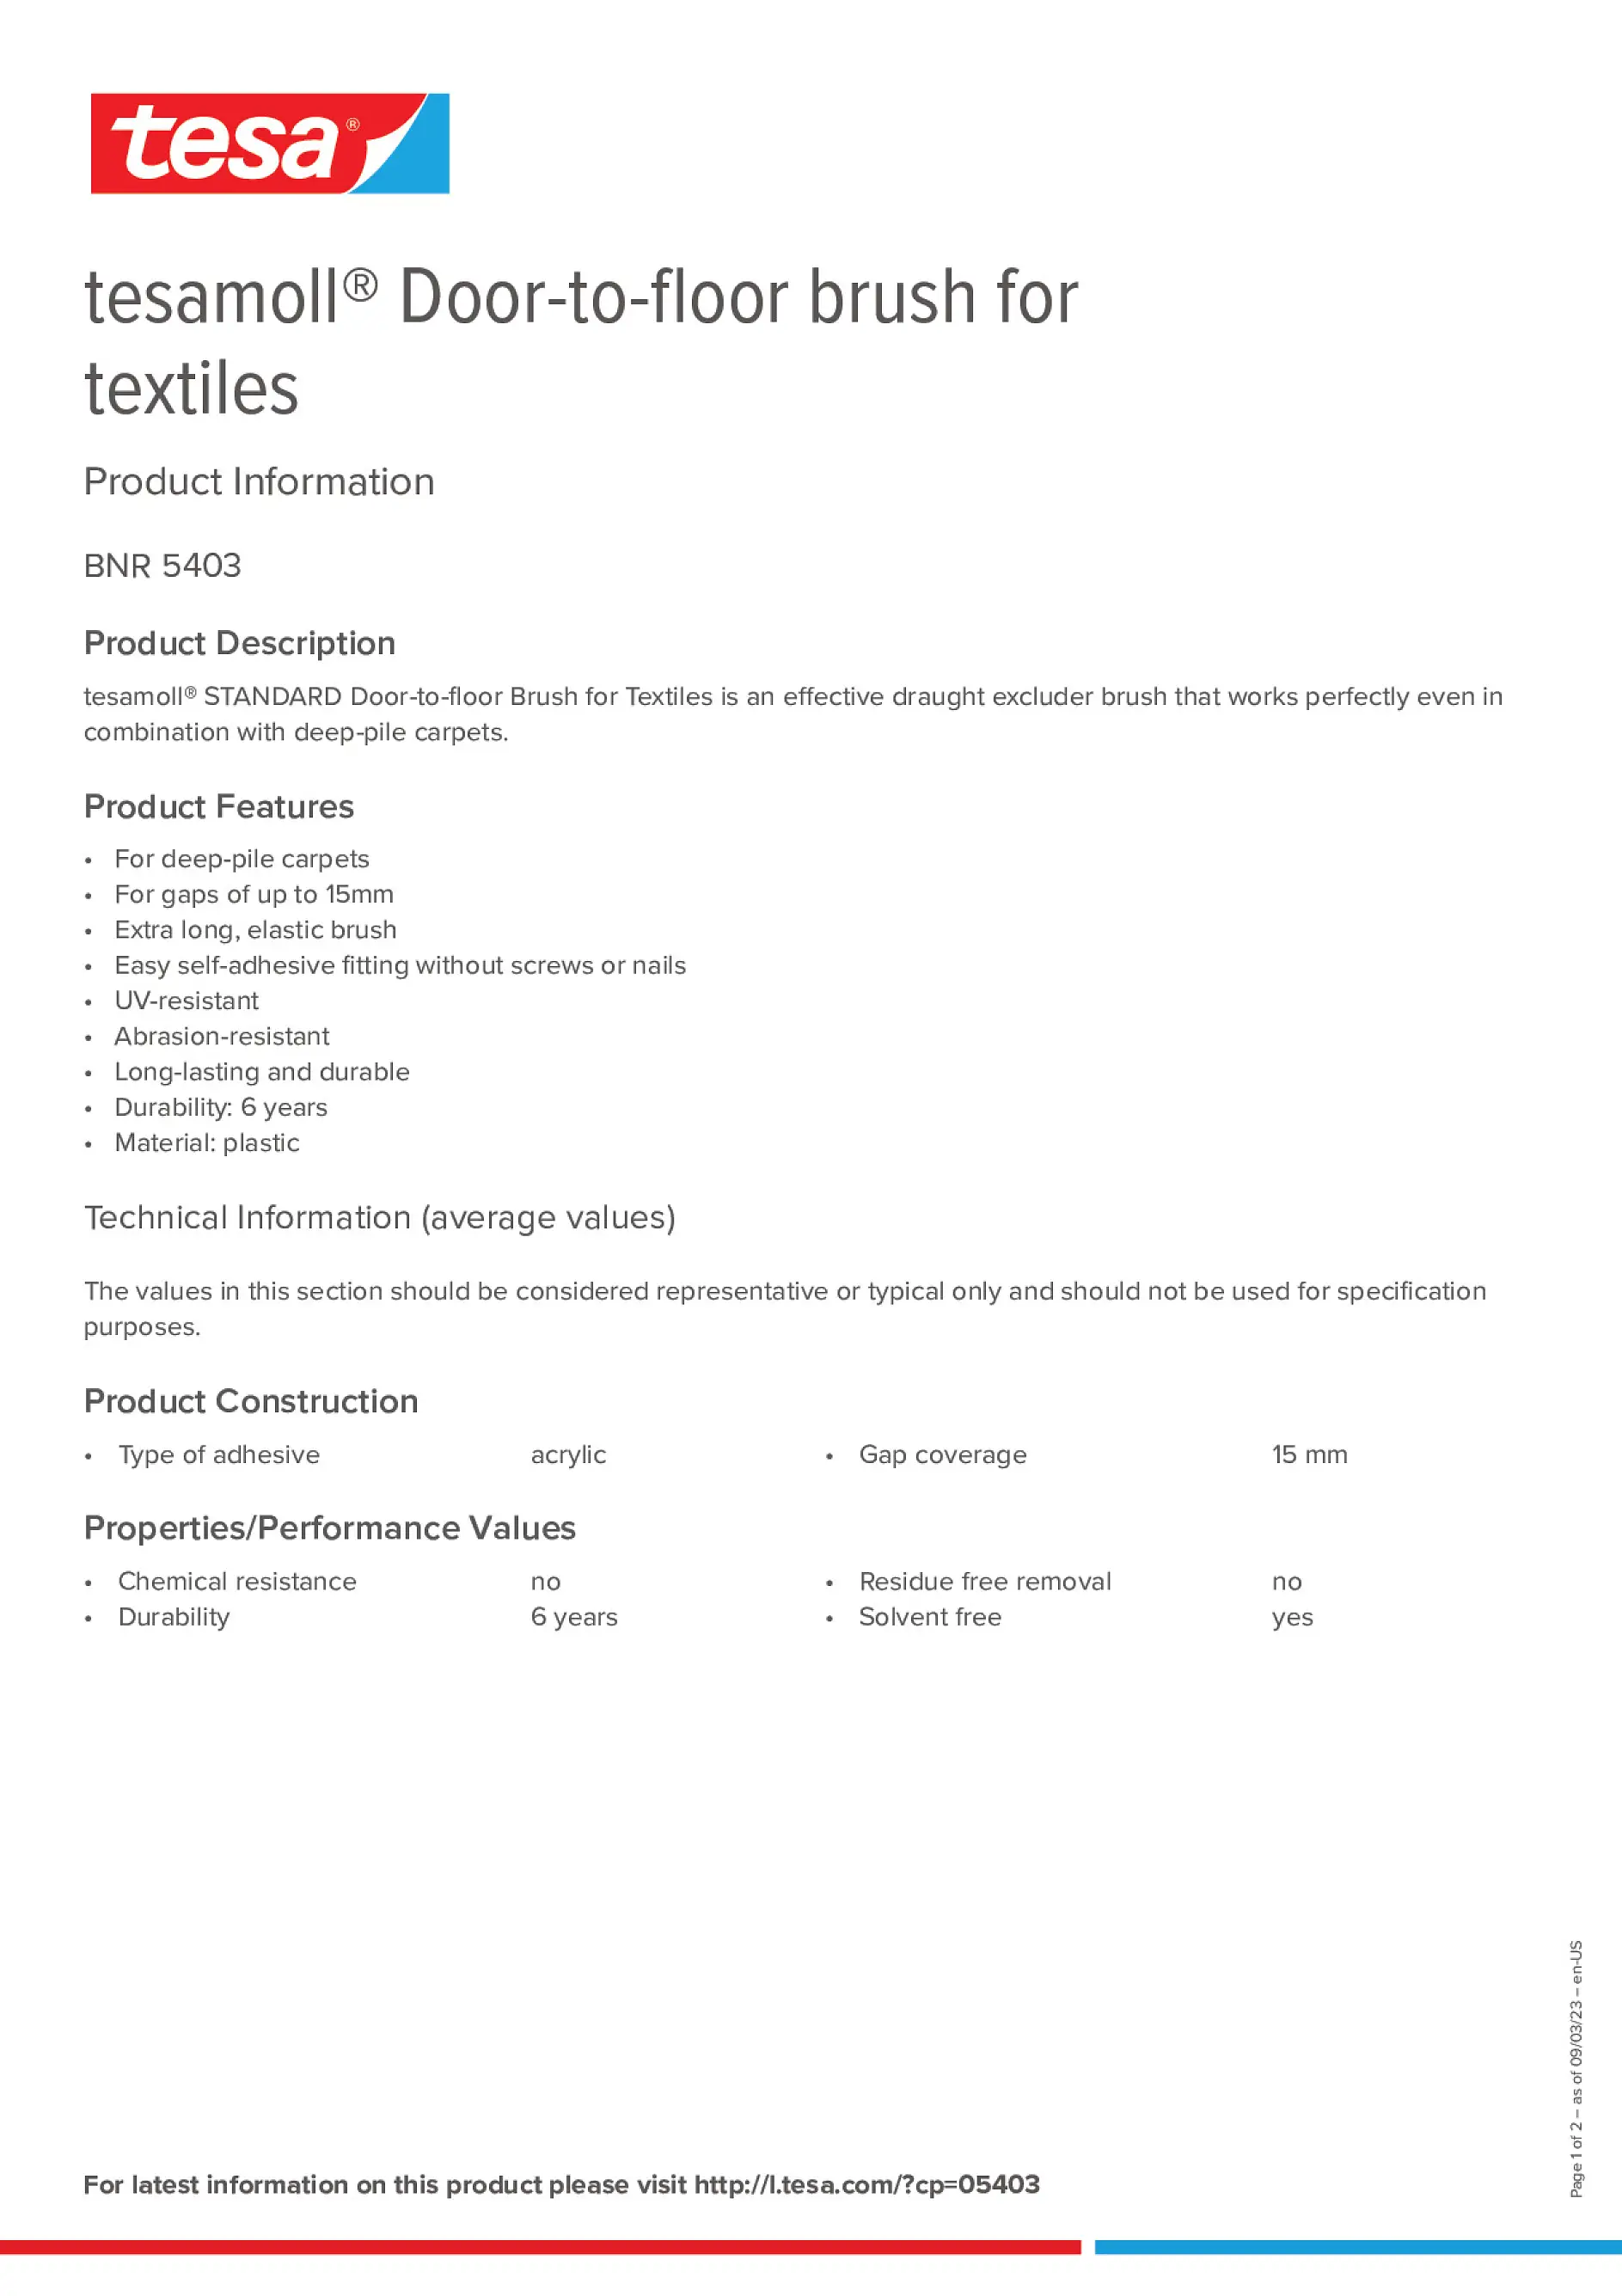 tesamoll-textiles-doortofloor-brush_copiw_en-US